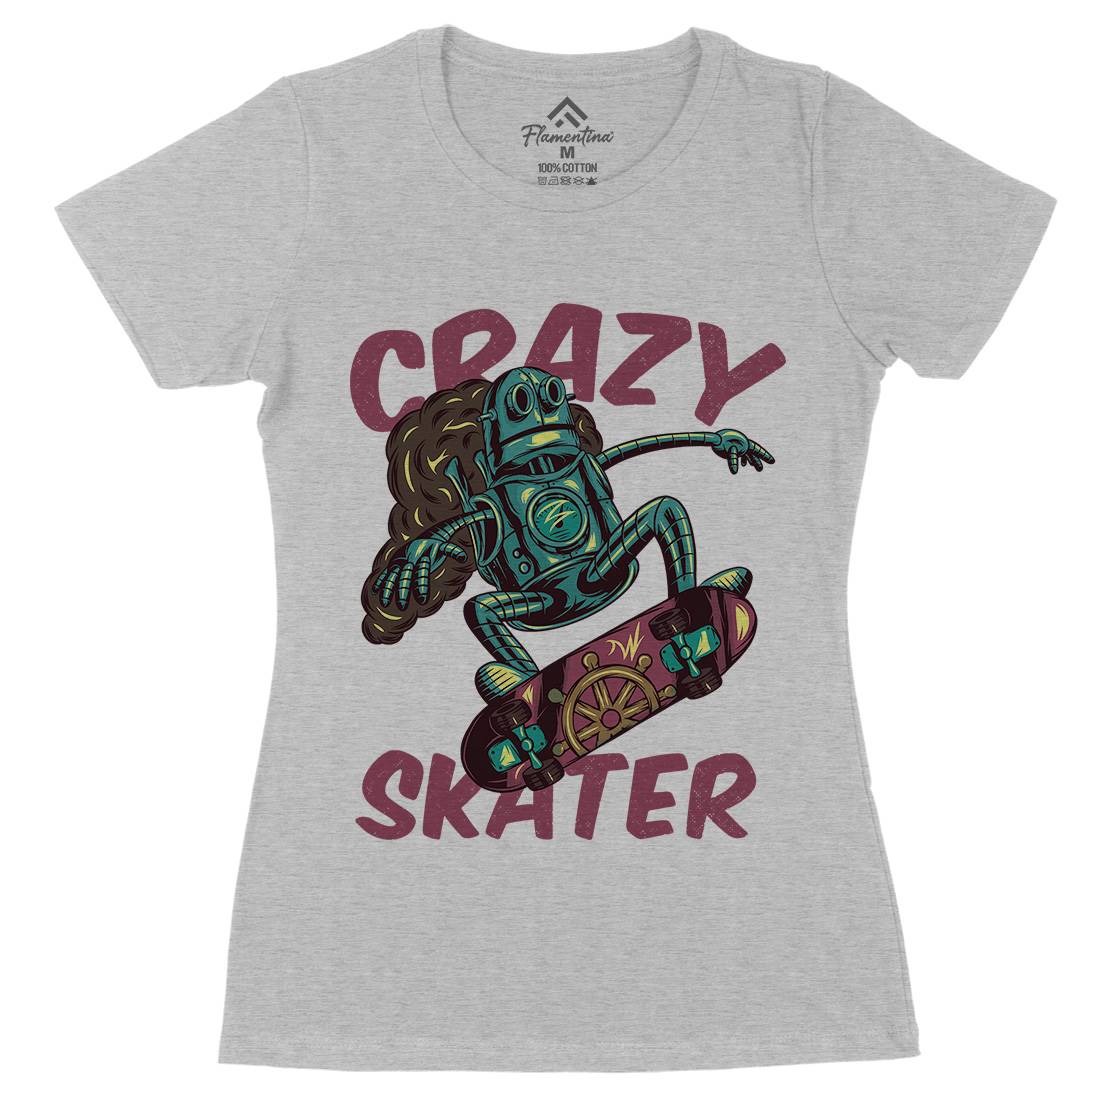 Robot Skater Womens Organic Crew Neck T-Shirt Skate C882